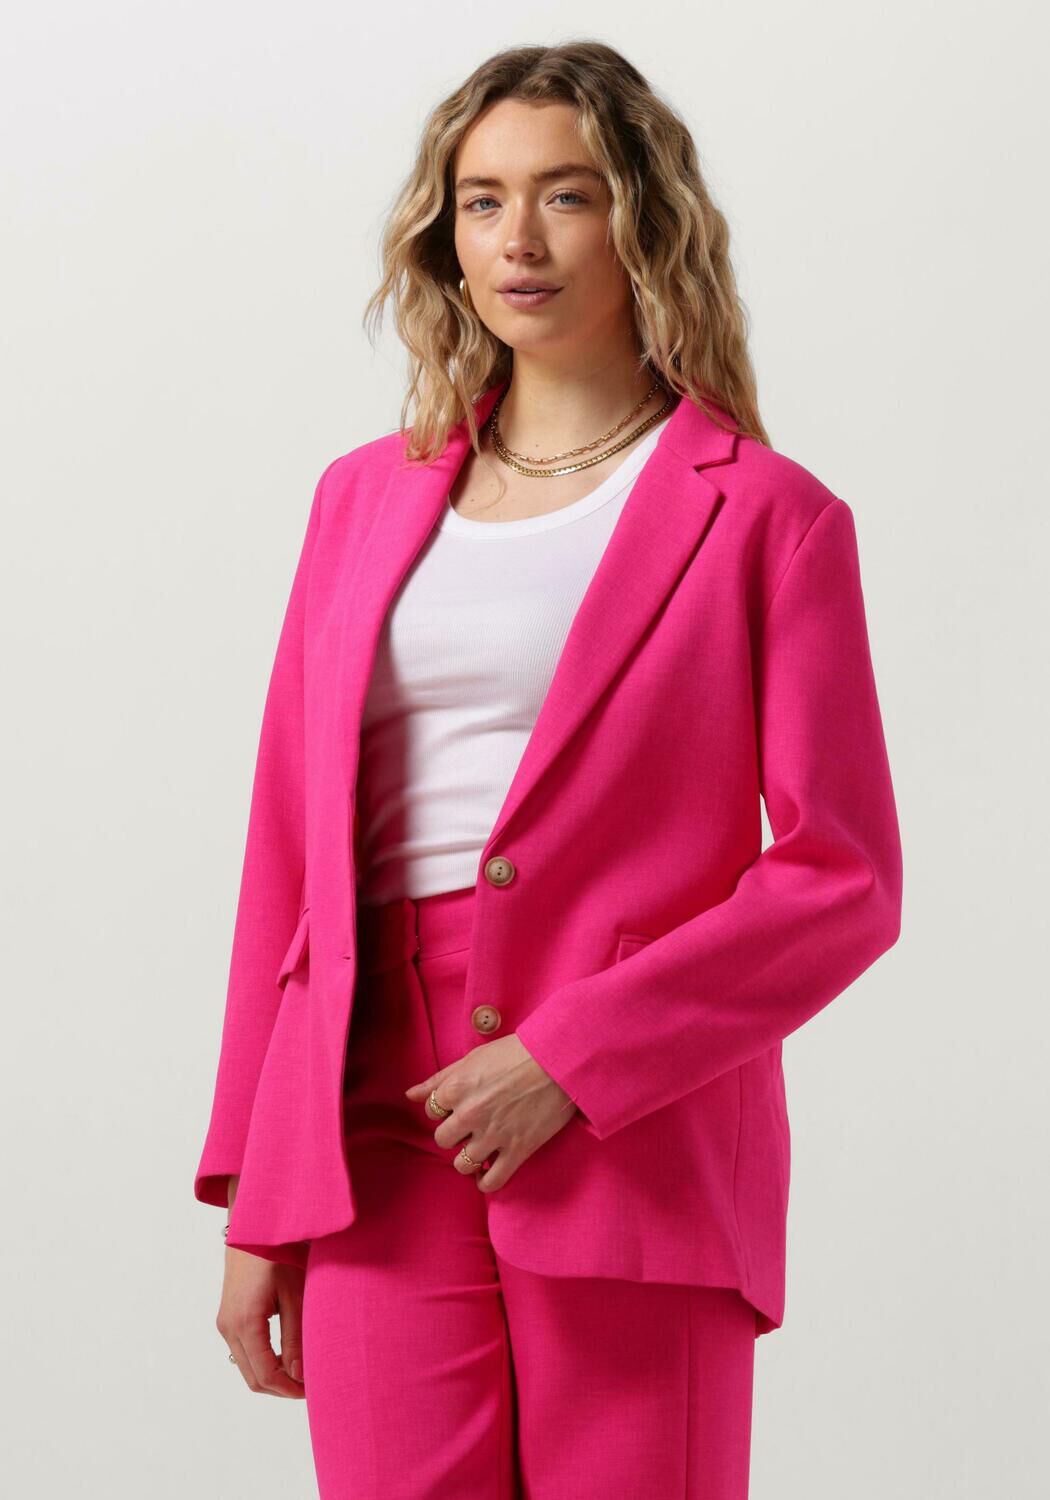 POM AMSTERDAM Dames Blazers Pink Glow Blazer Roze